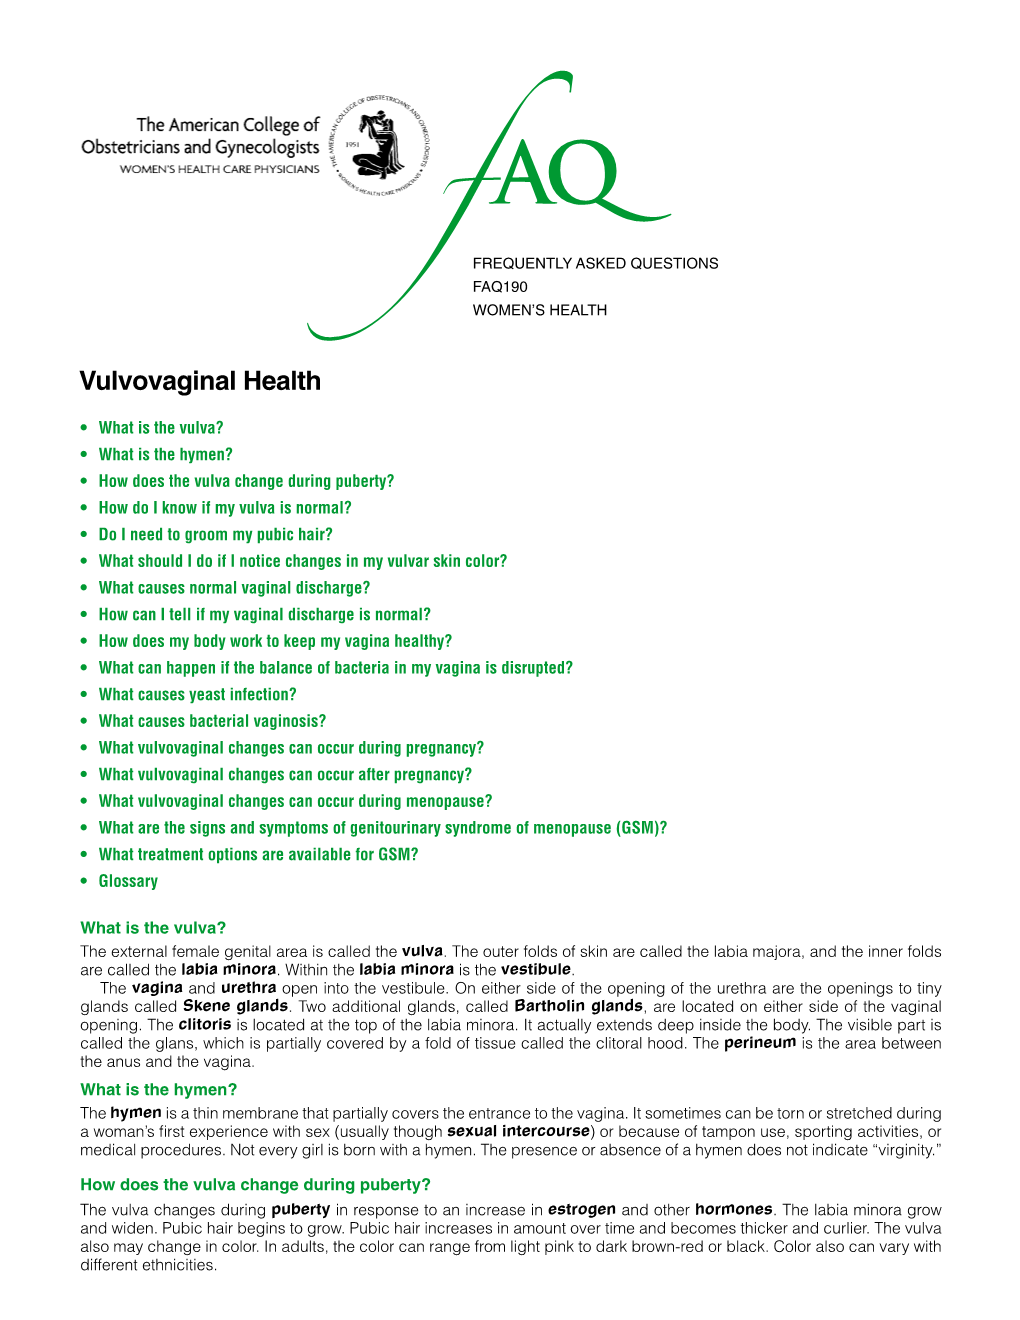 FAQ190 -- Vulvovaginal Health